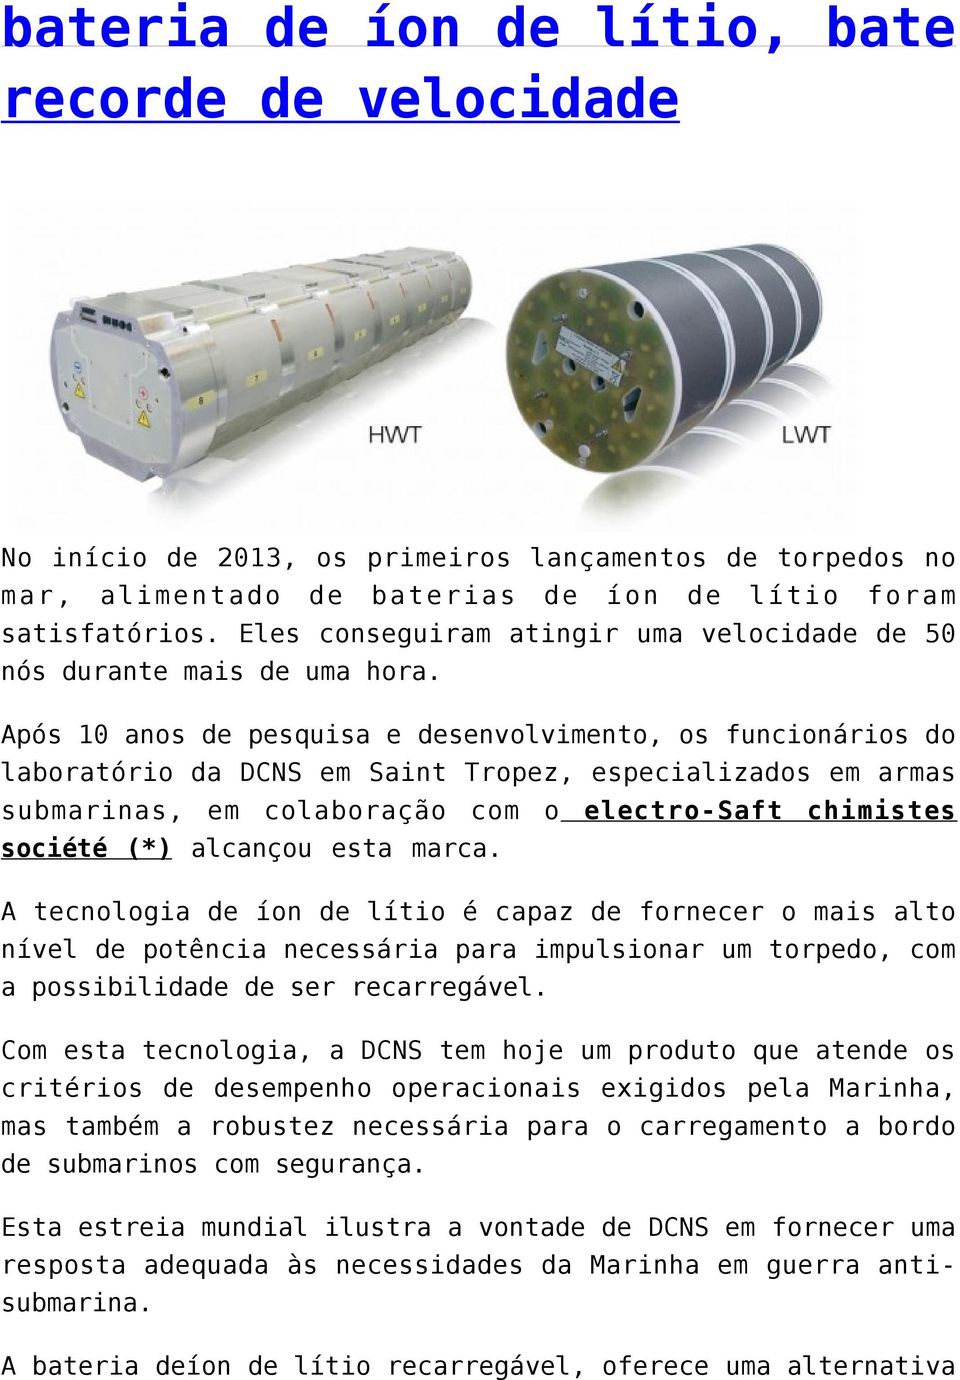 Após 10 anos de pesquisa e desenvolvimento, os funcionários do laboratório da DCNS em Saint Tropez, especializados em armas submarinas, em colaboração com o electro-saft chimistes société (*)